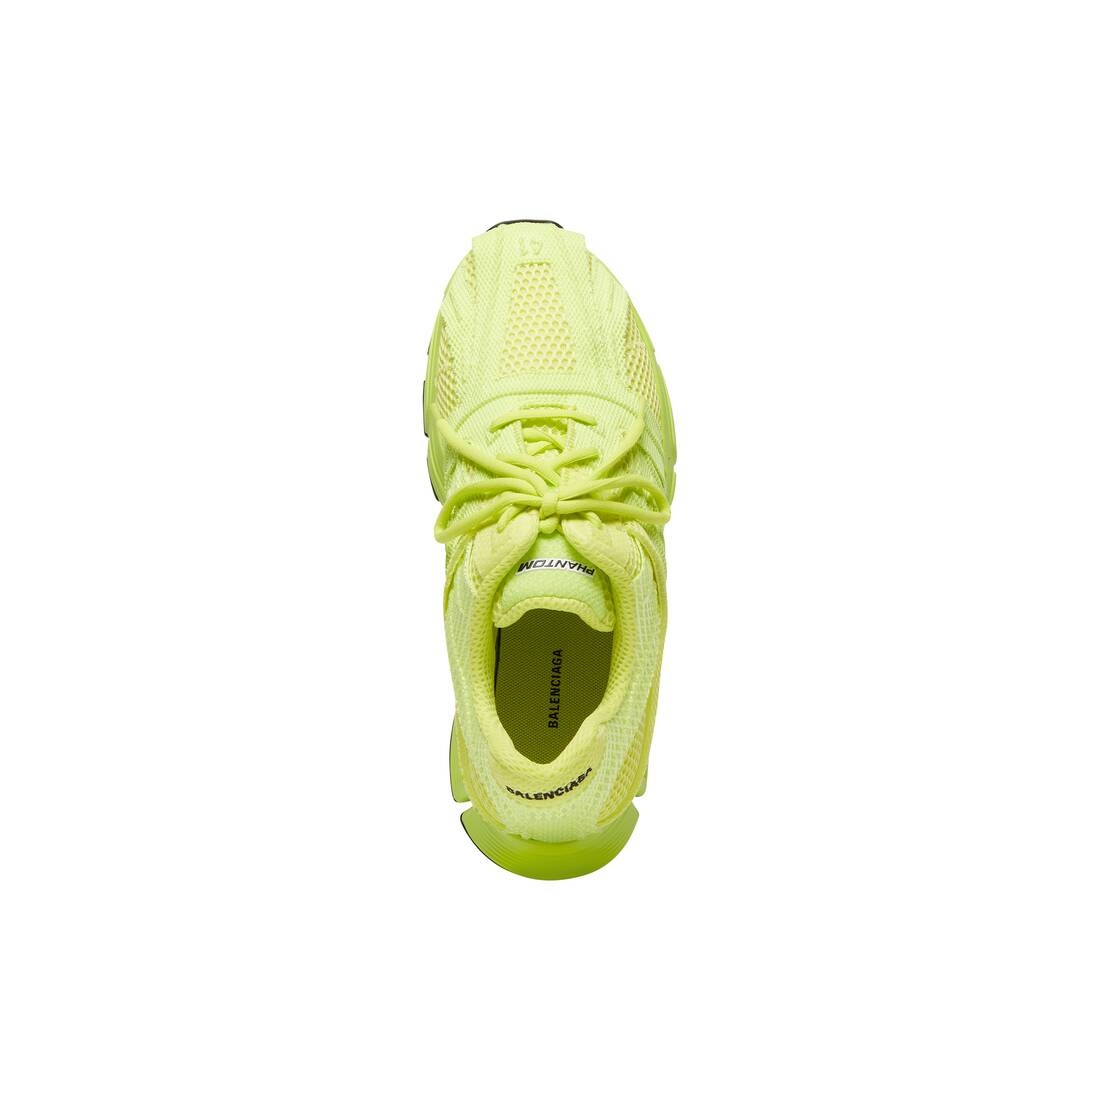 Men's Phantom Sneaker in Yellow - 6